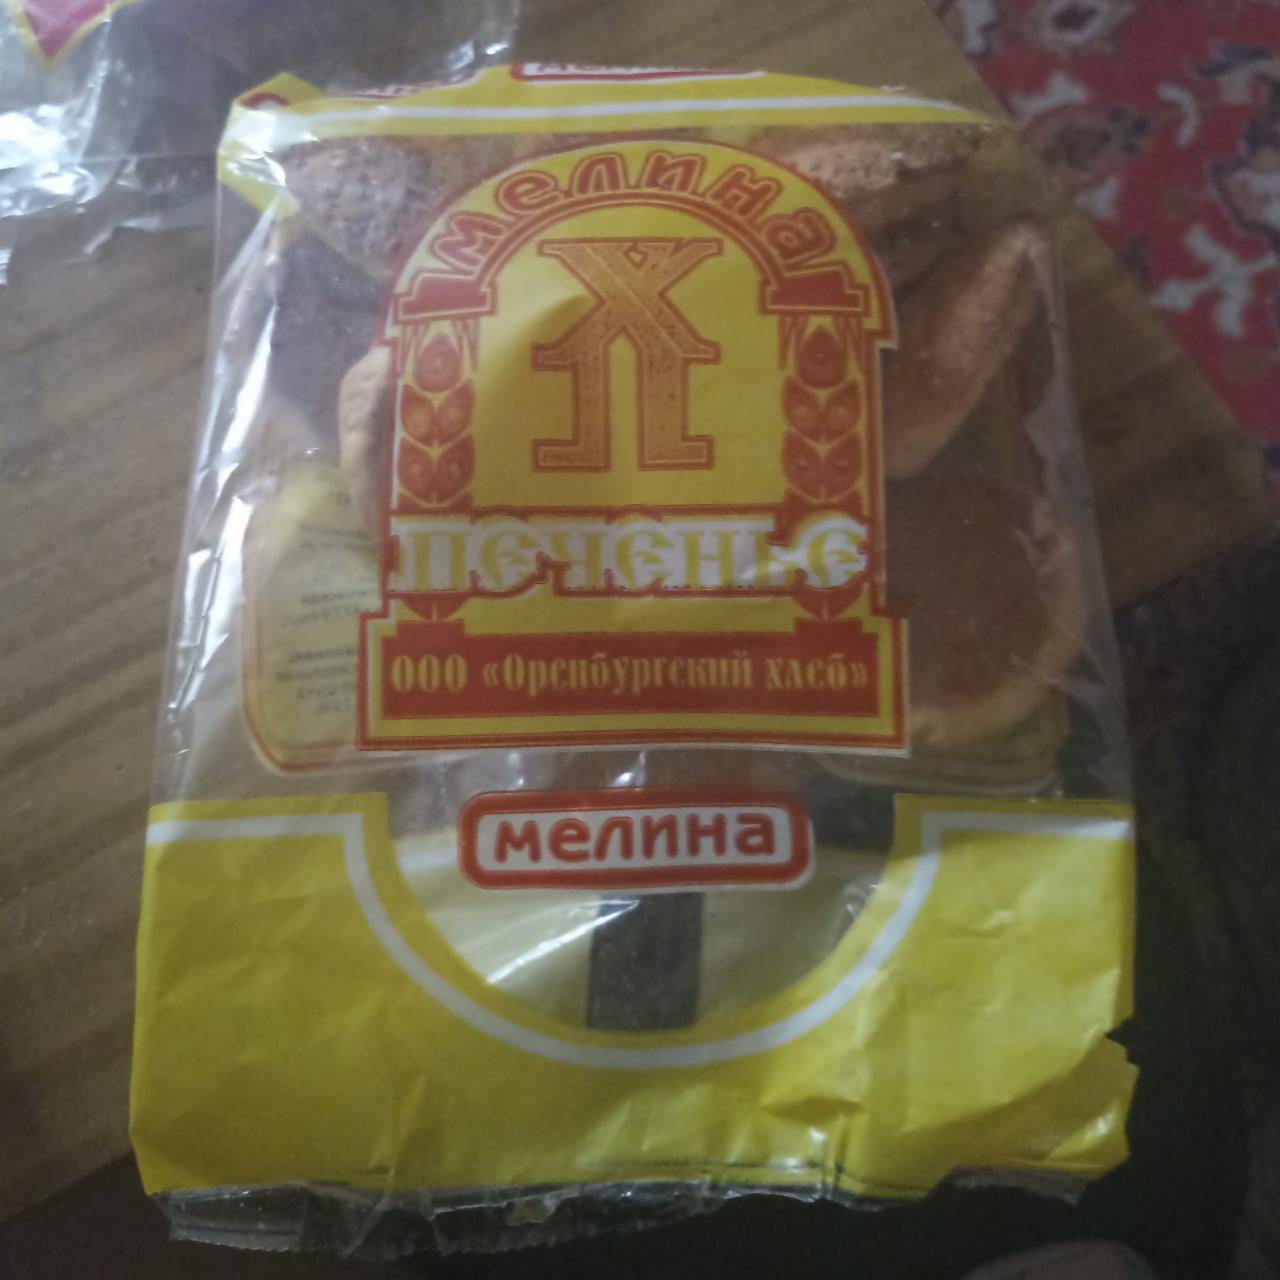 Фото - Печенье с кунжутом Мелина ООО Оренбургский хлеб